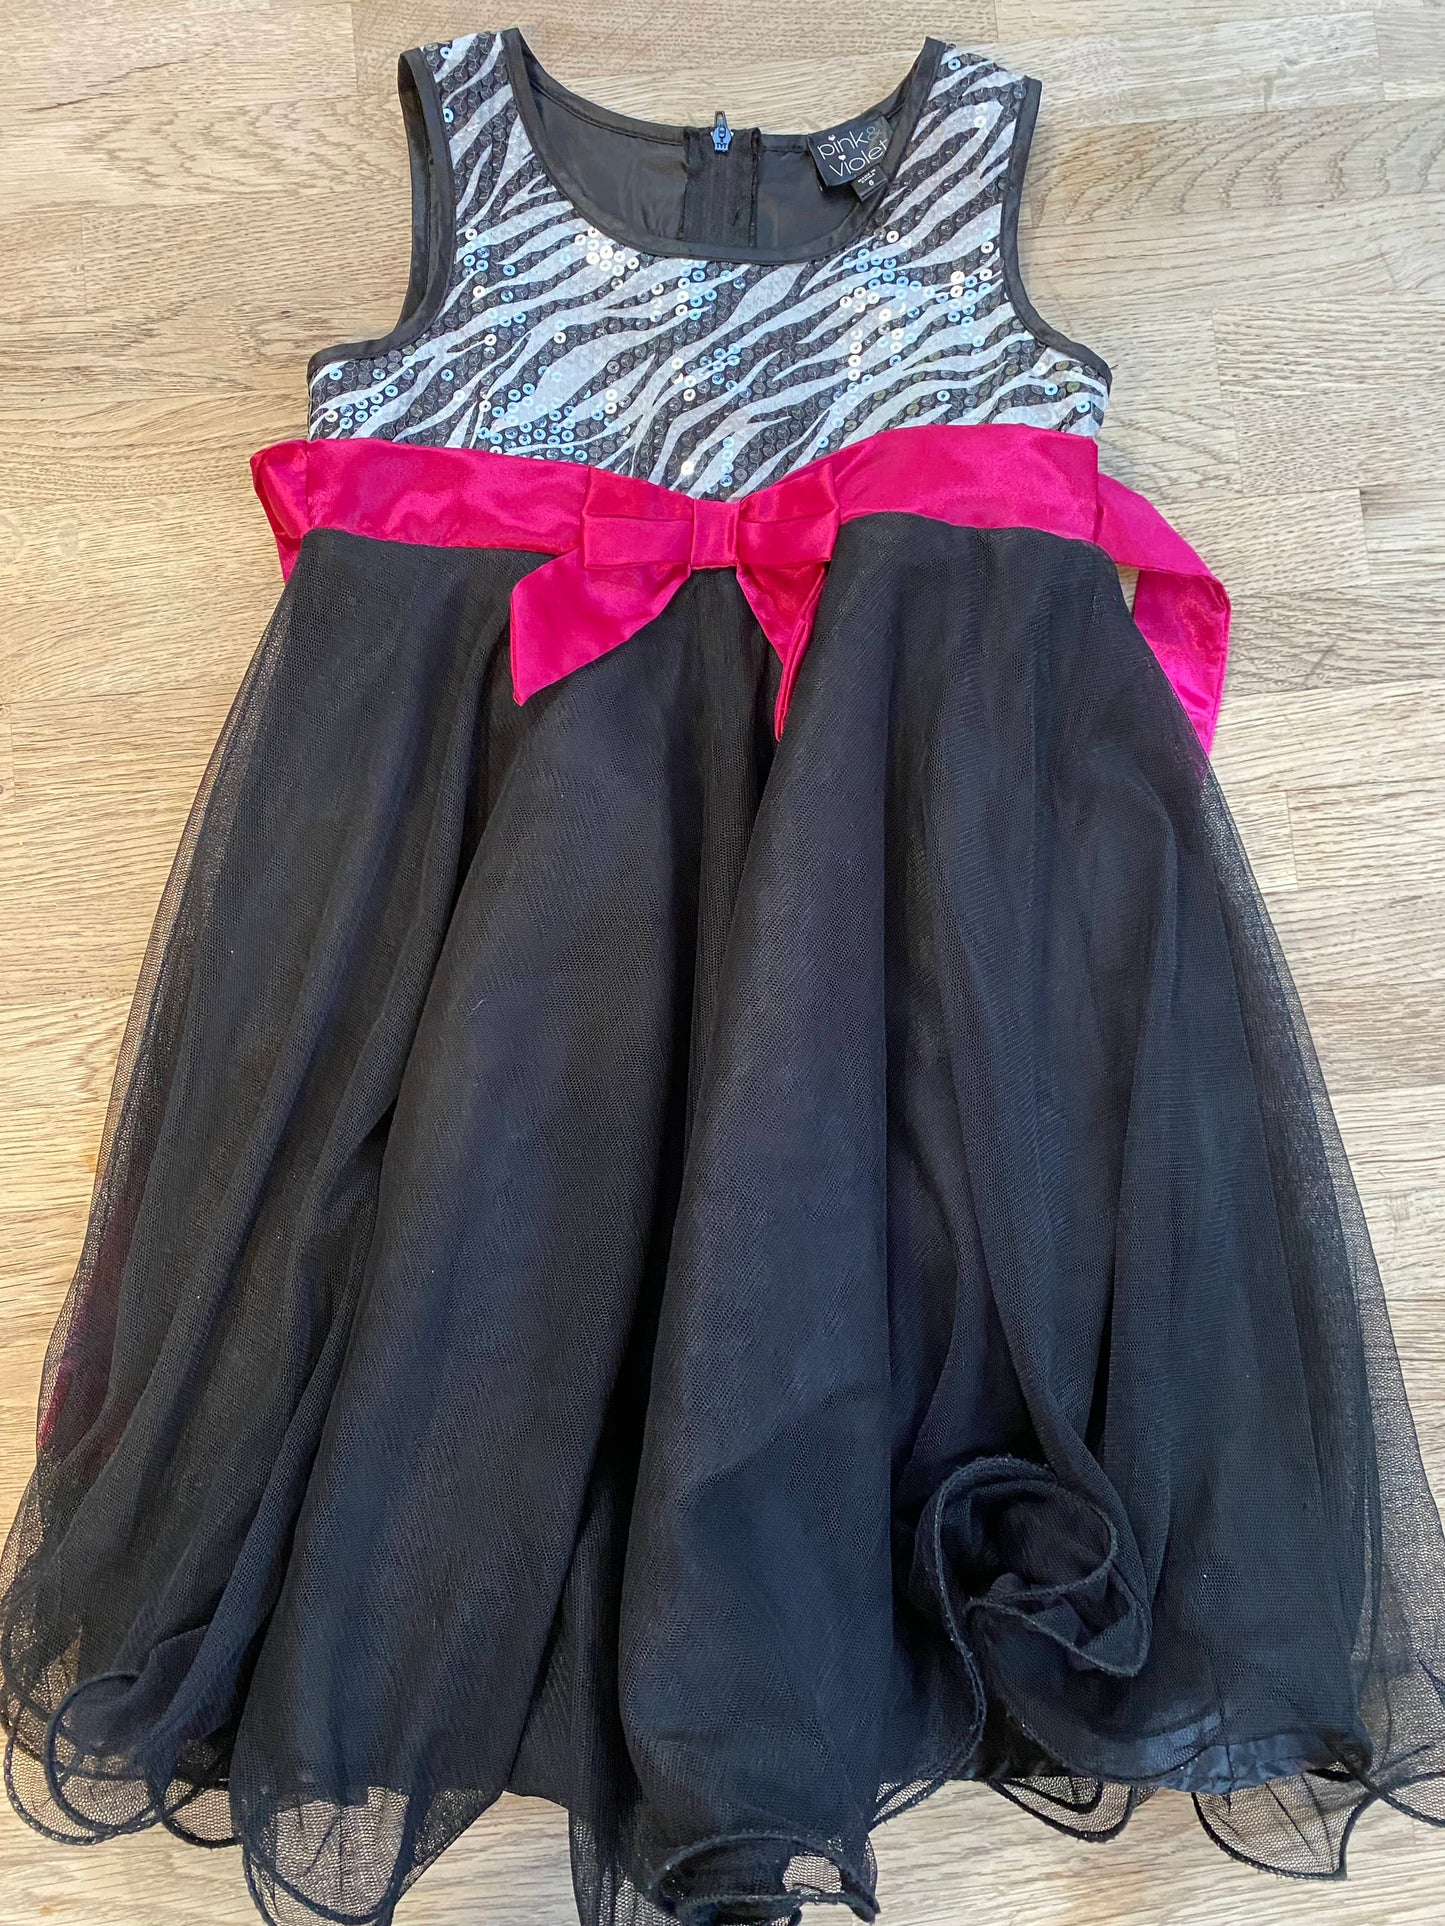 Black Sequin Dress with Hot Pink Sash (Pre-Loved) Size 6 - PInk & Violet